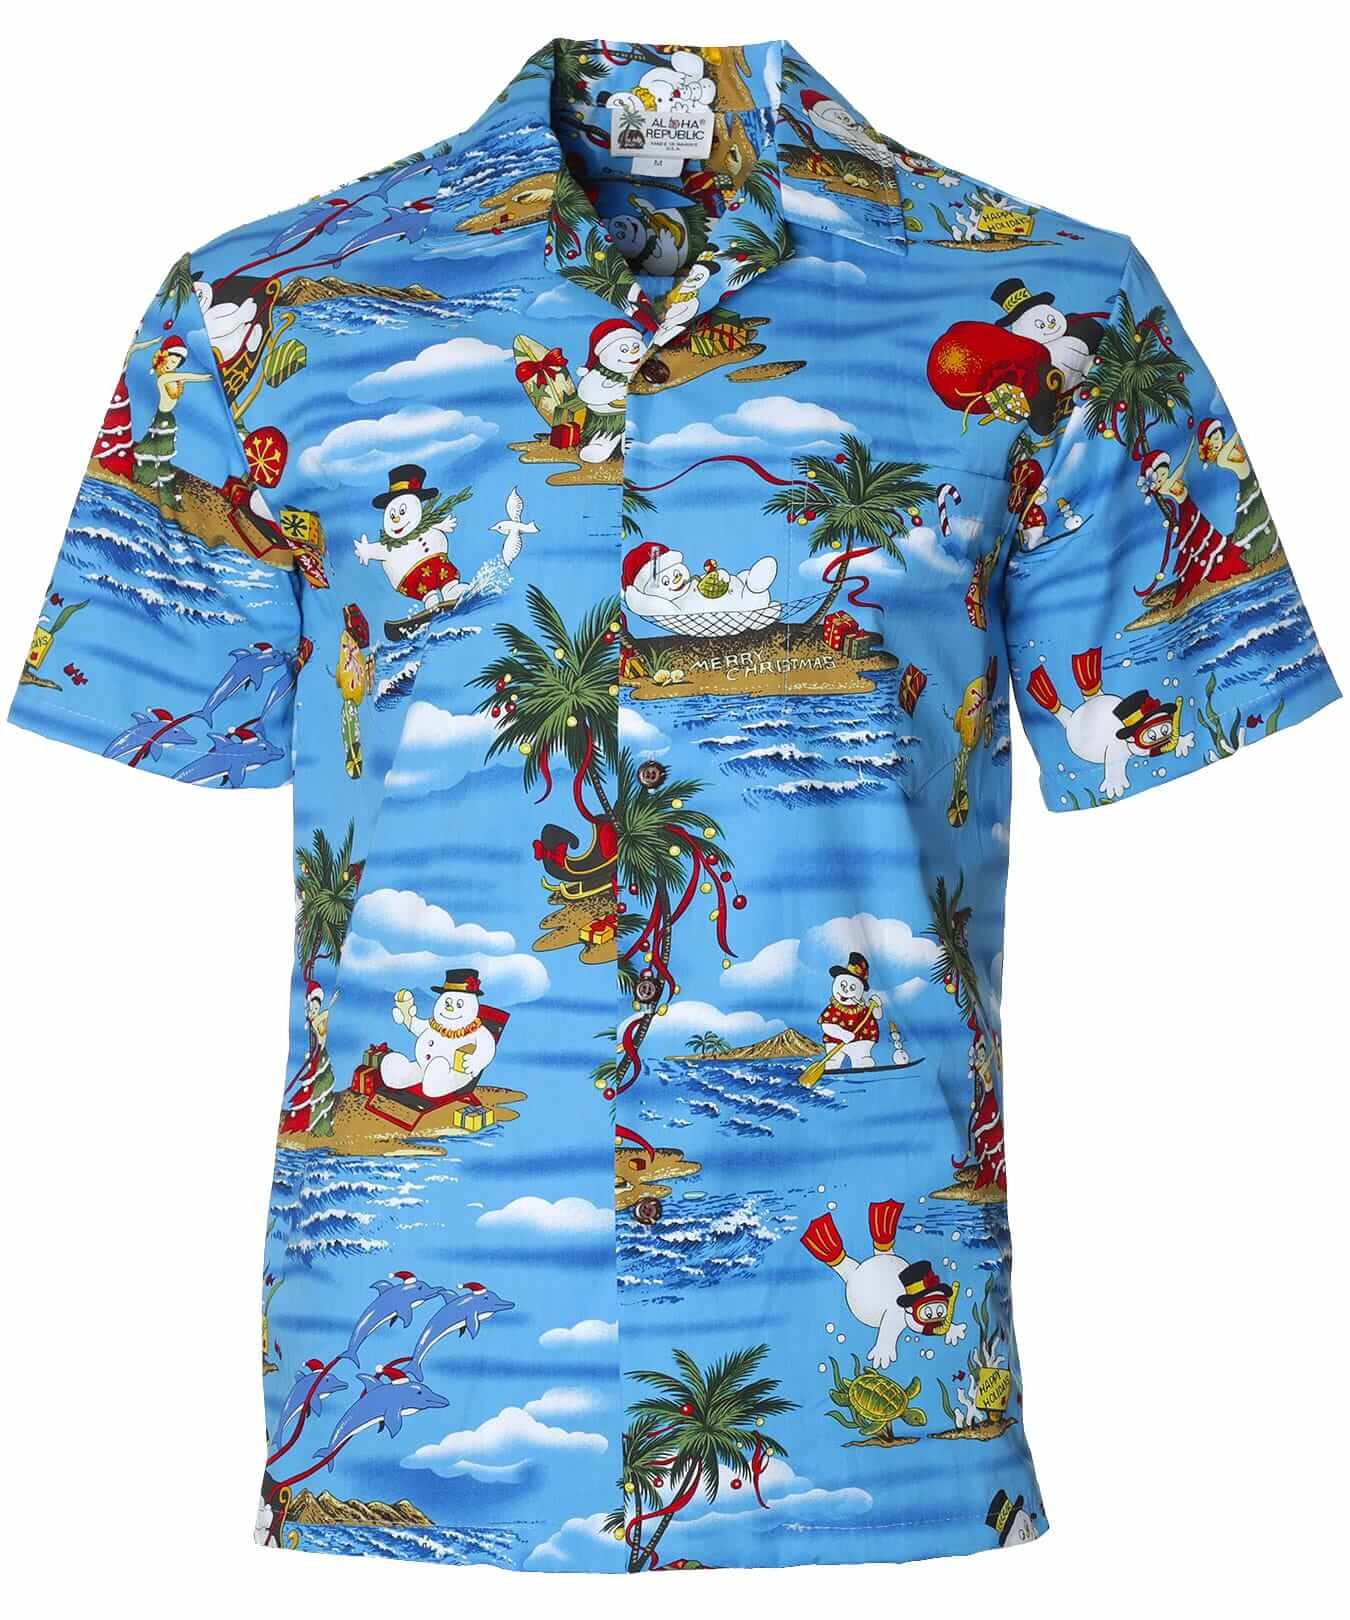 Mauna kea Christmas Aloha Santa Shirt Blue